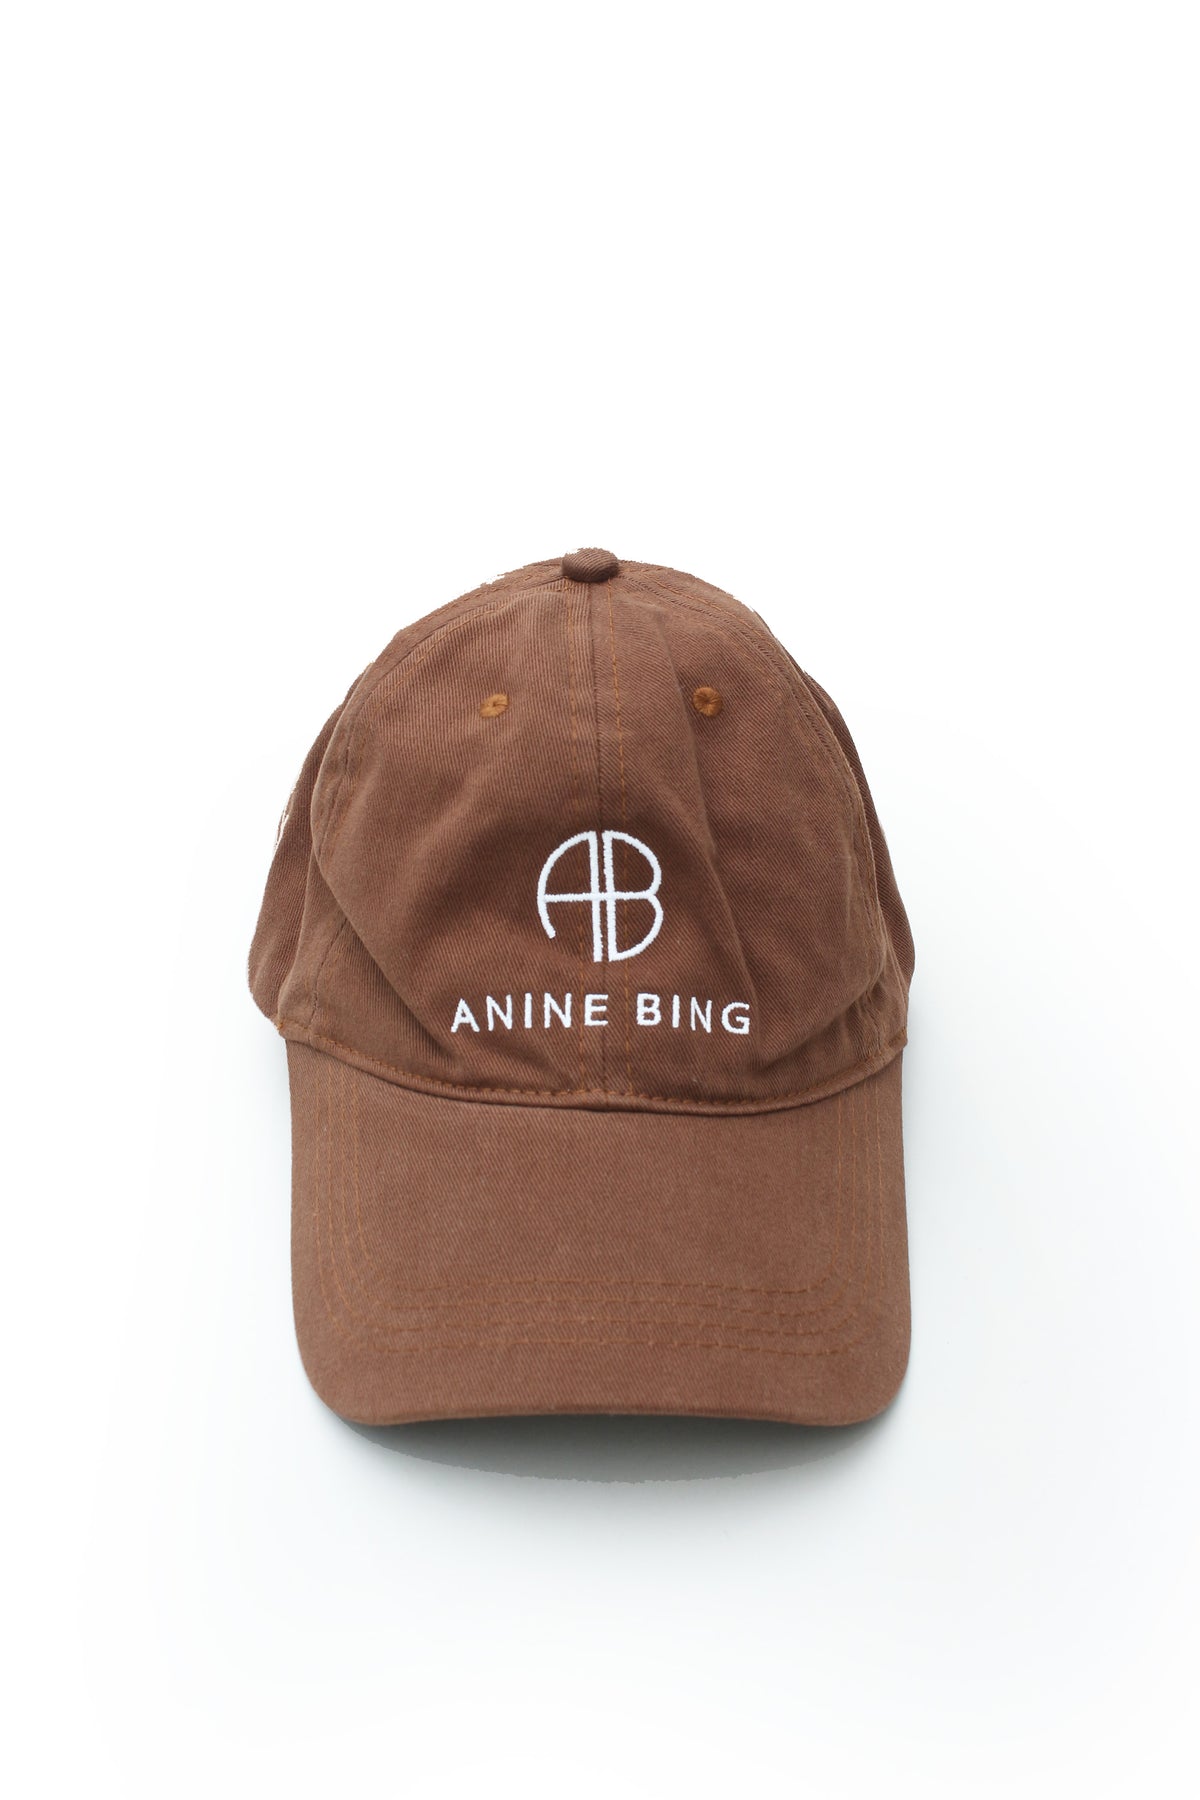 Anine Bing Baseball Cap